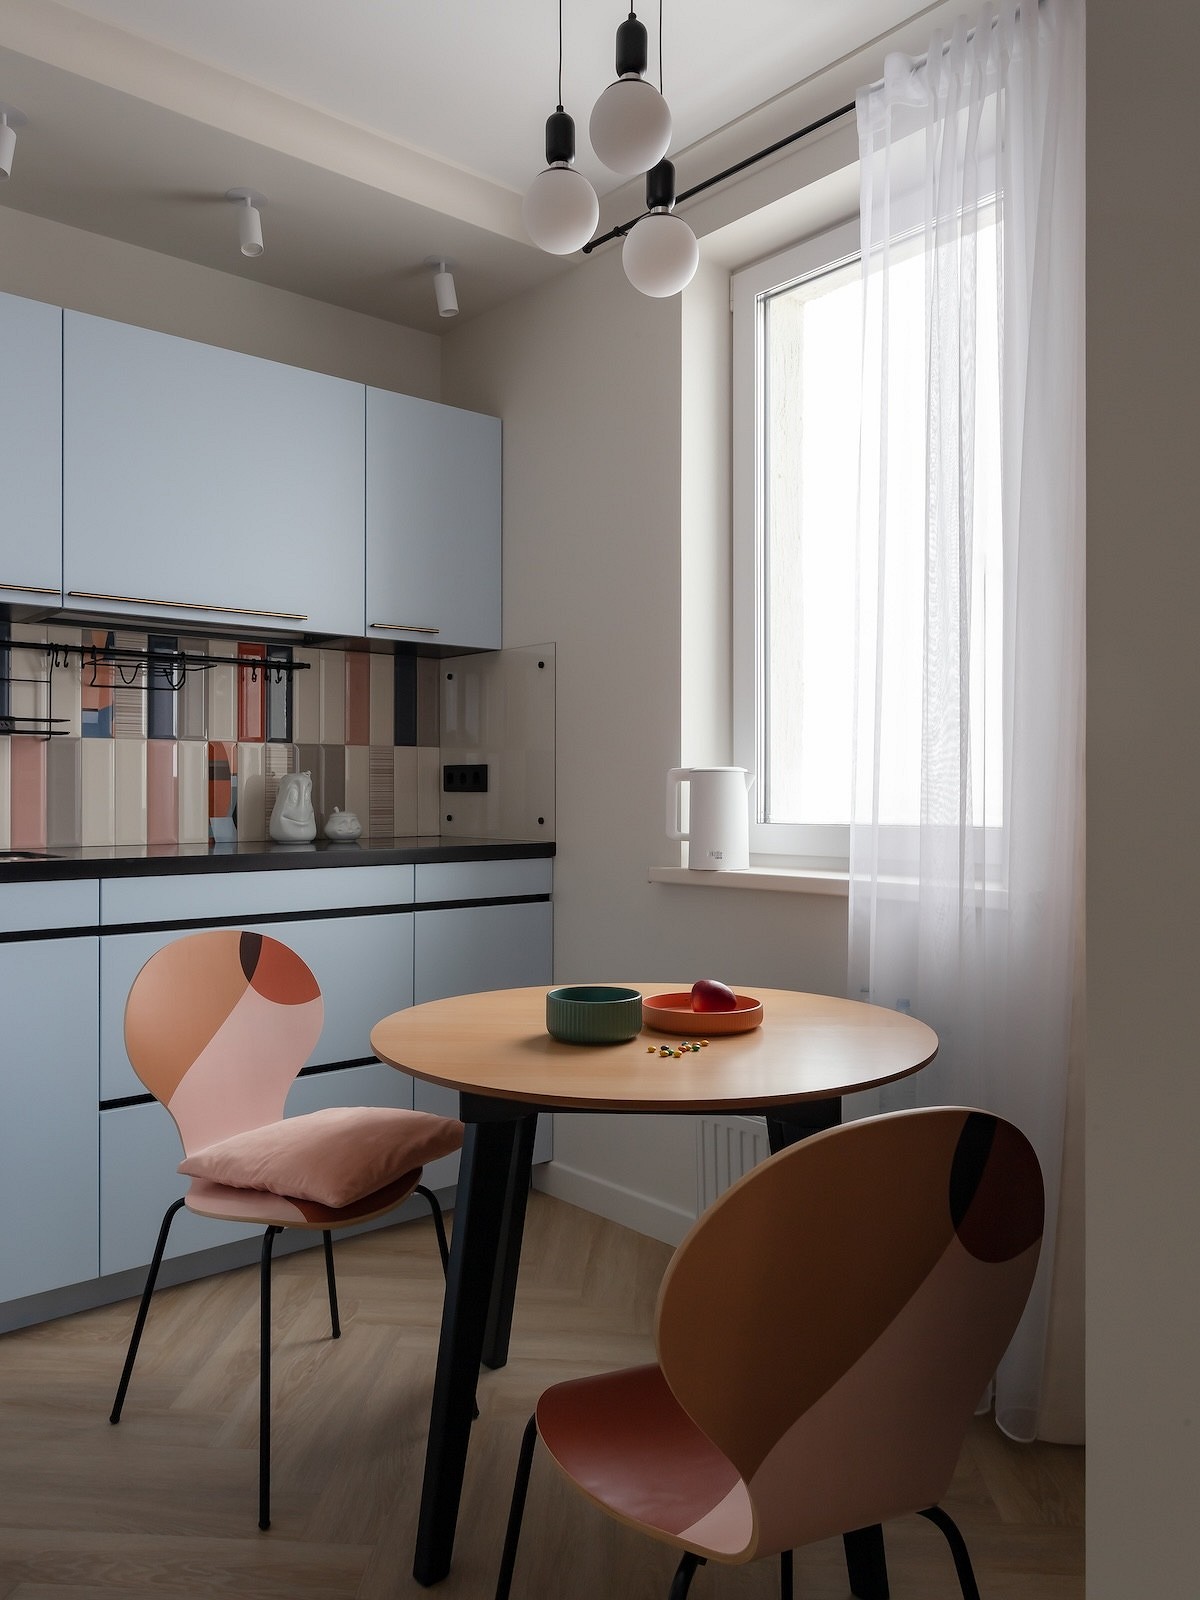 Интерьер для молодоженов: как дизайнер оформила первую квартиру 43 кв. м для семьи15